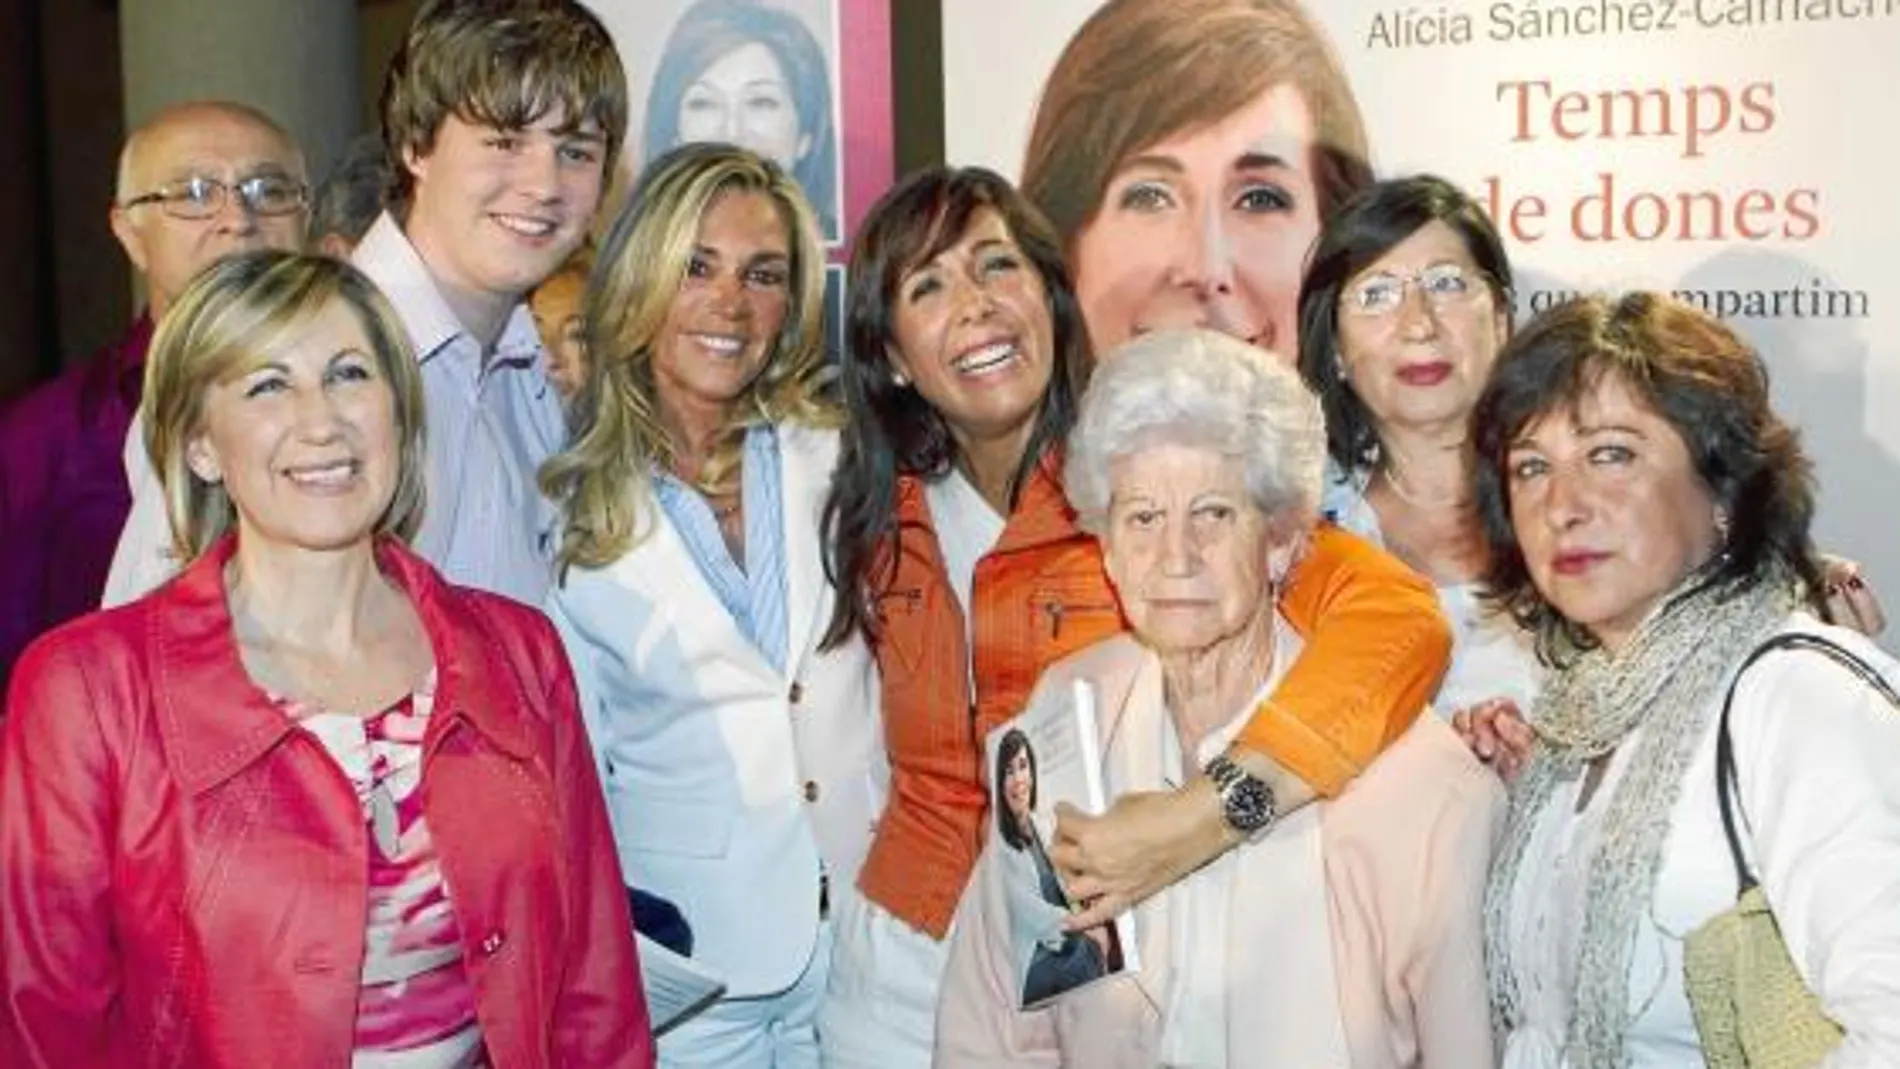 Sánchez-Camacho abrazando a su madre, Manuela, junto a Monty Parera, Juan Ventosa y otros asistentes